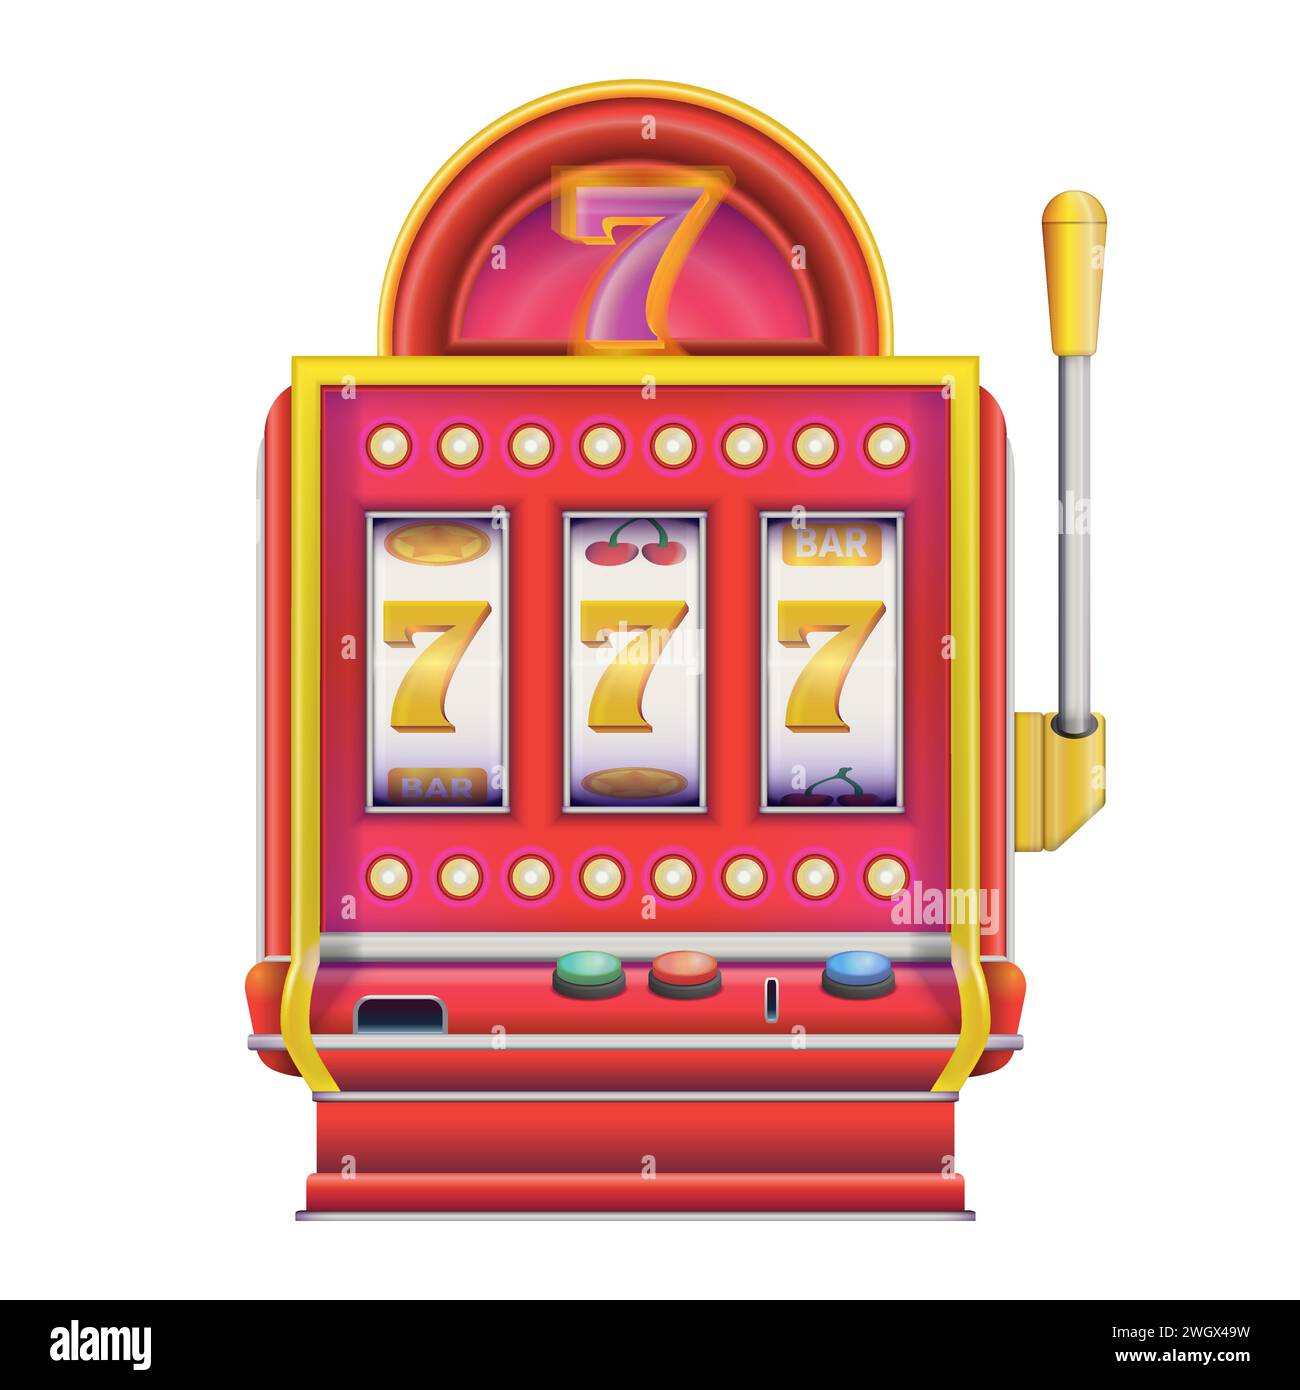 Spielautomat im realistischen Stil mit Lucky Sivens 777. Casino Las Vegas Jackpot. Bunte Vektorillustration isoliert auf weißem Hintergrund. Stock Vektor